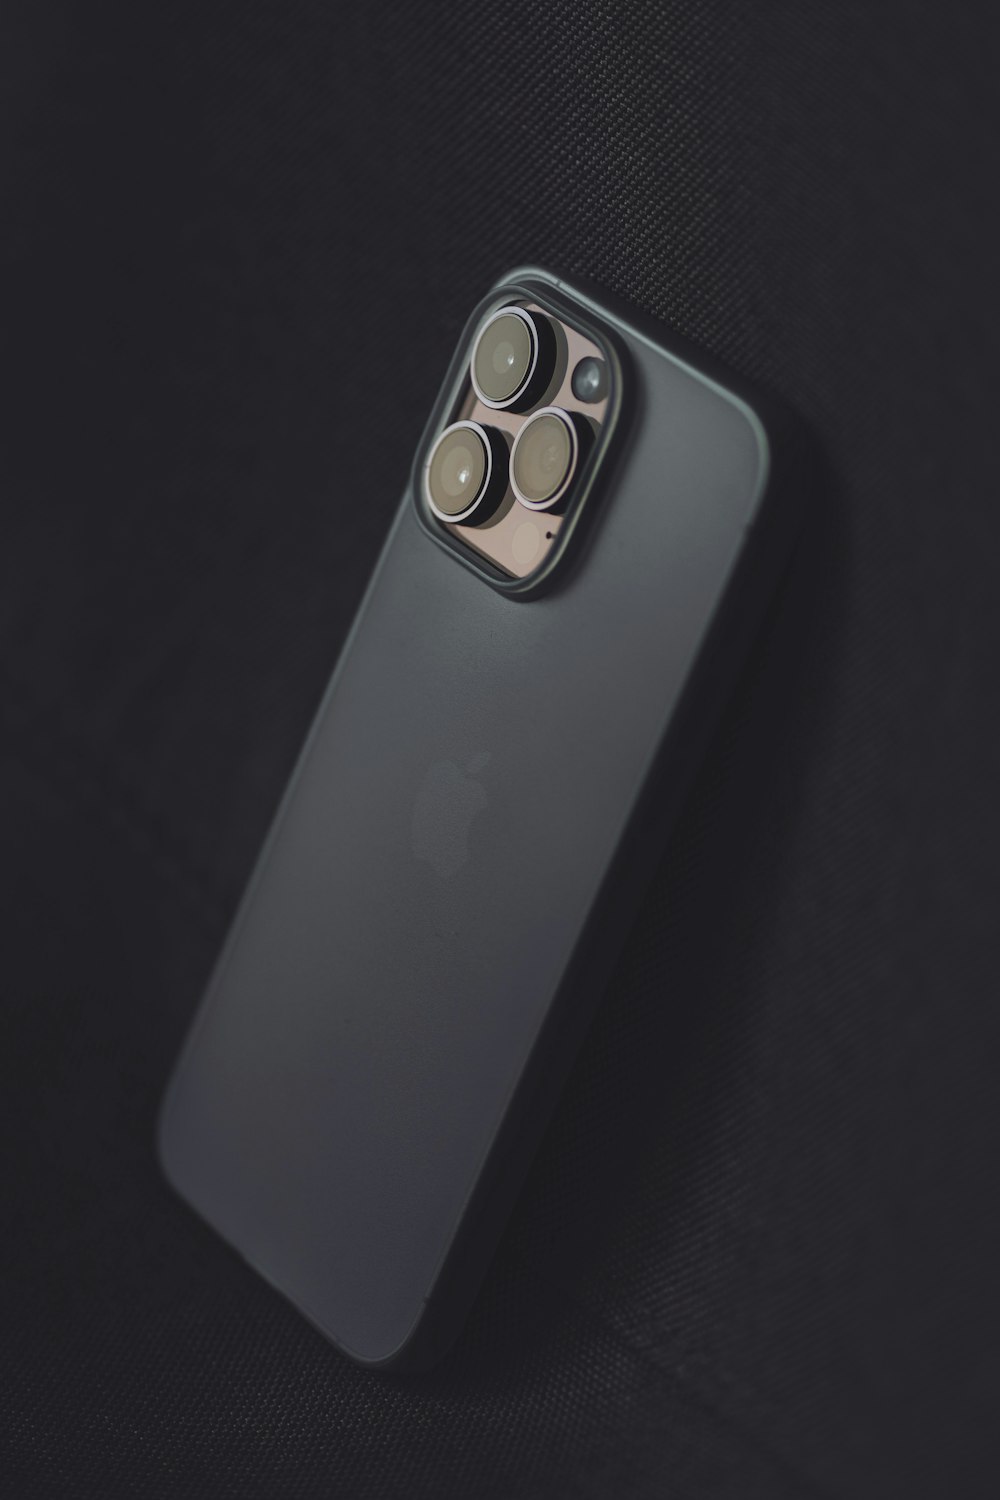 Die Rückseite eines iPhone 11 Pro mit angeschlossener Kamera